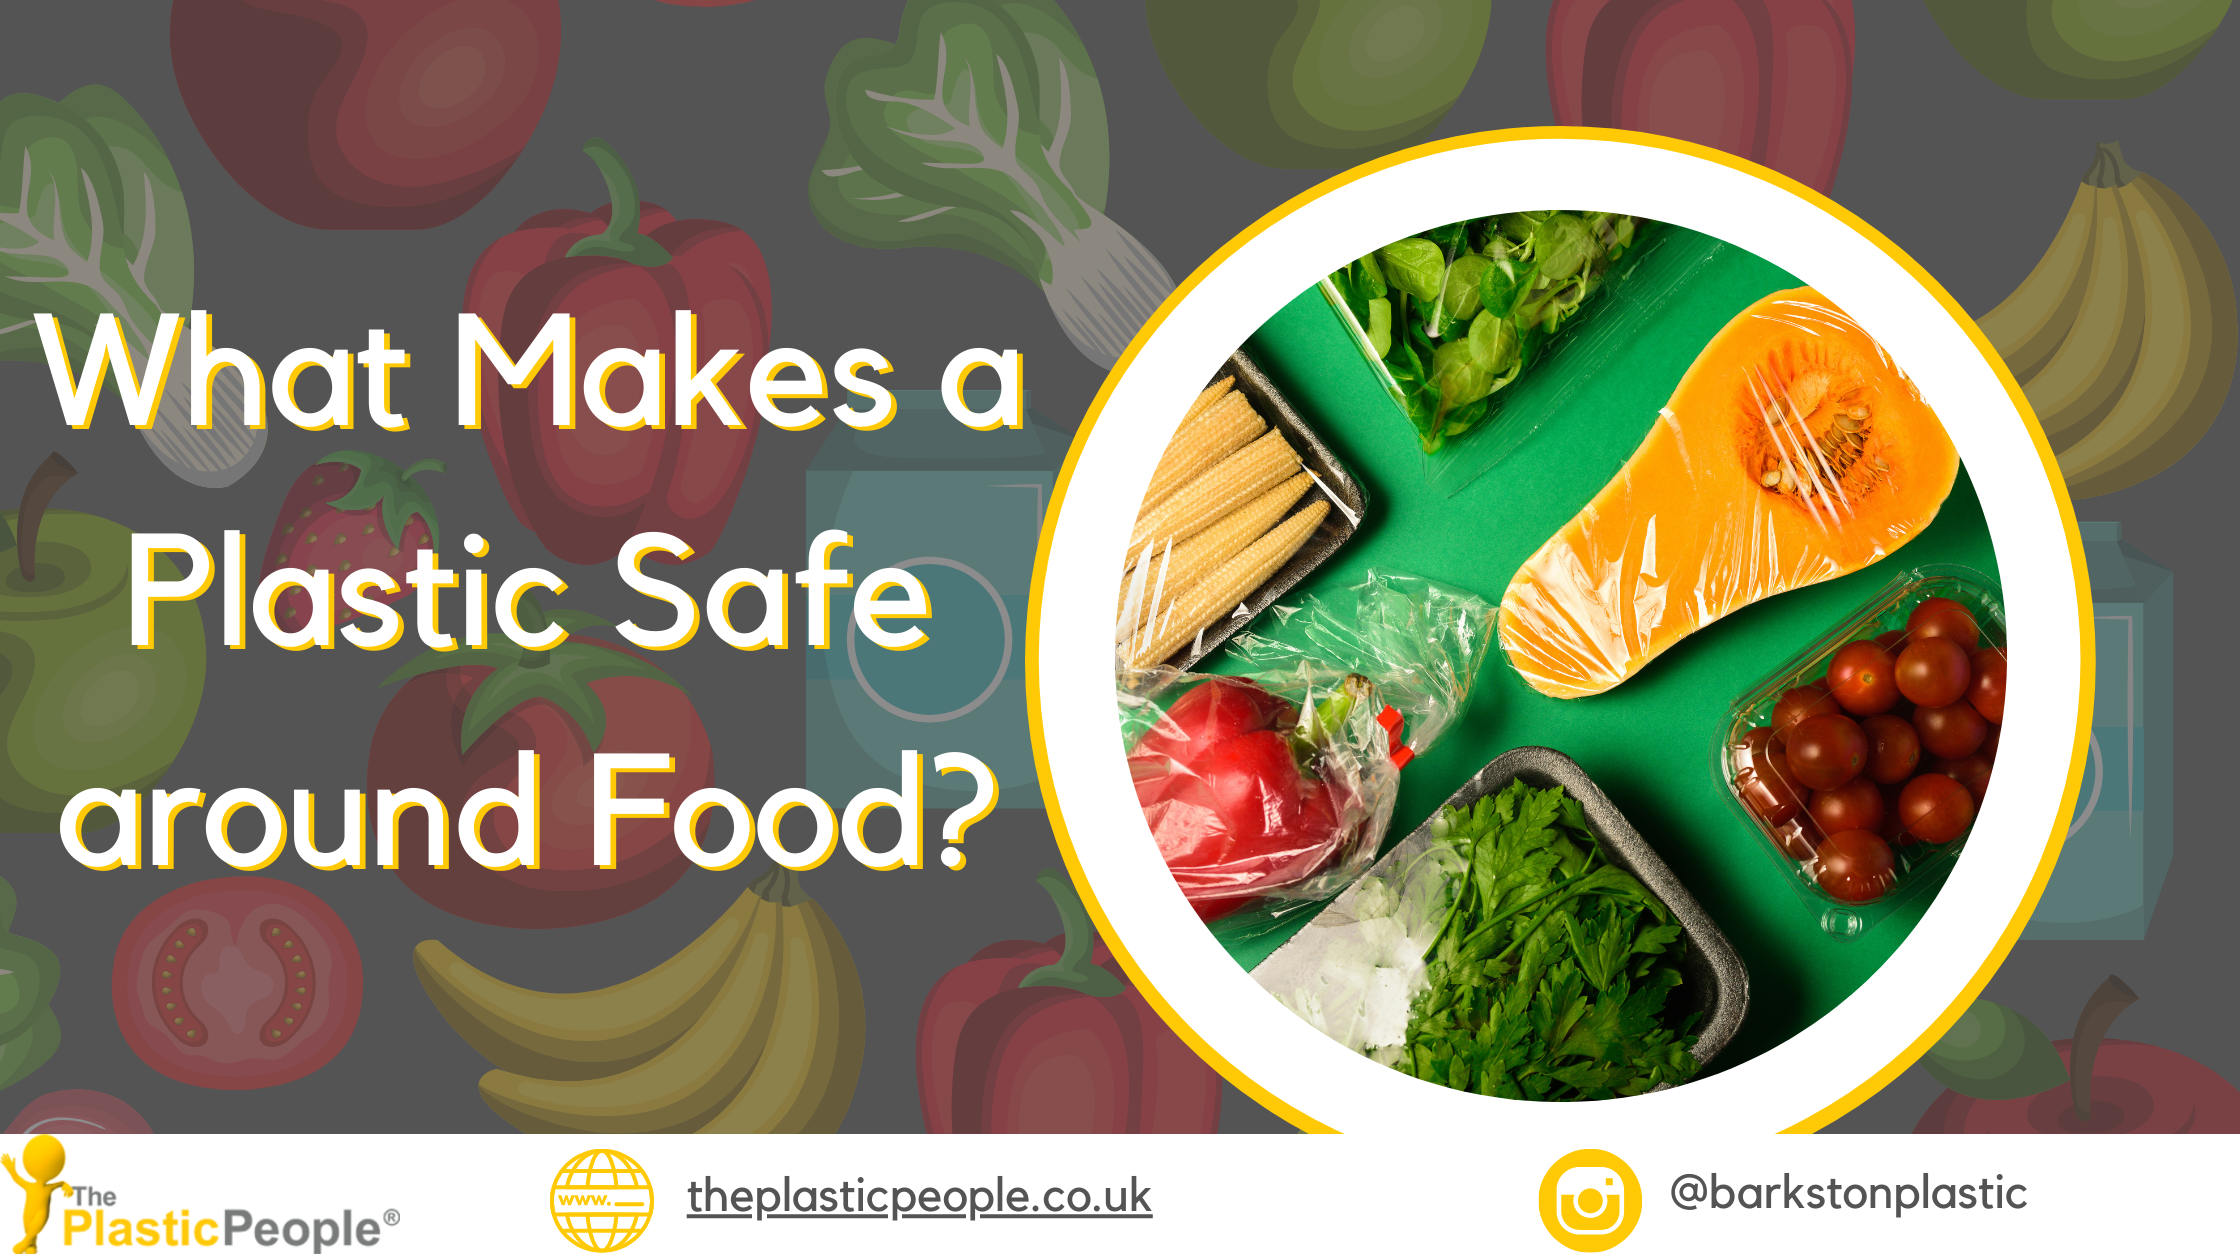 https://www.theplasticpeople.co.uk/getattachment/f9b110e9-e57d-44d4-b8c5-8ba5b0c55ba9/food-safe-plastics.png?lang=en-GB